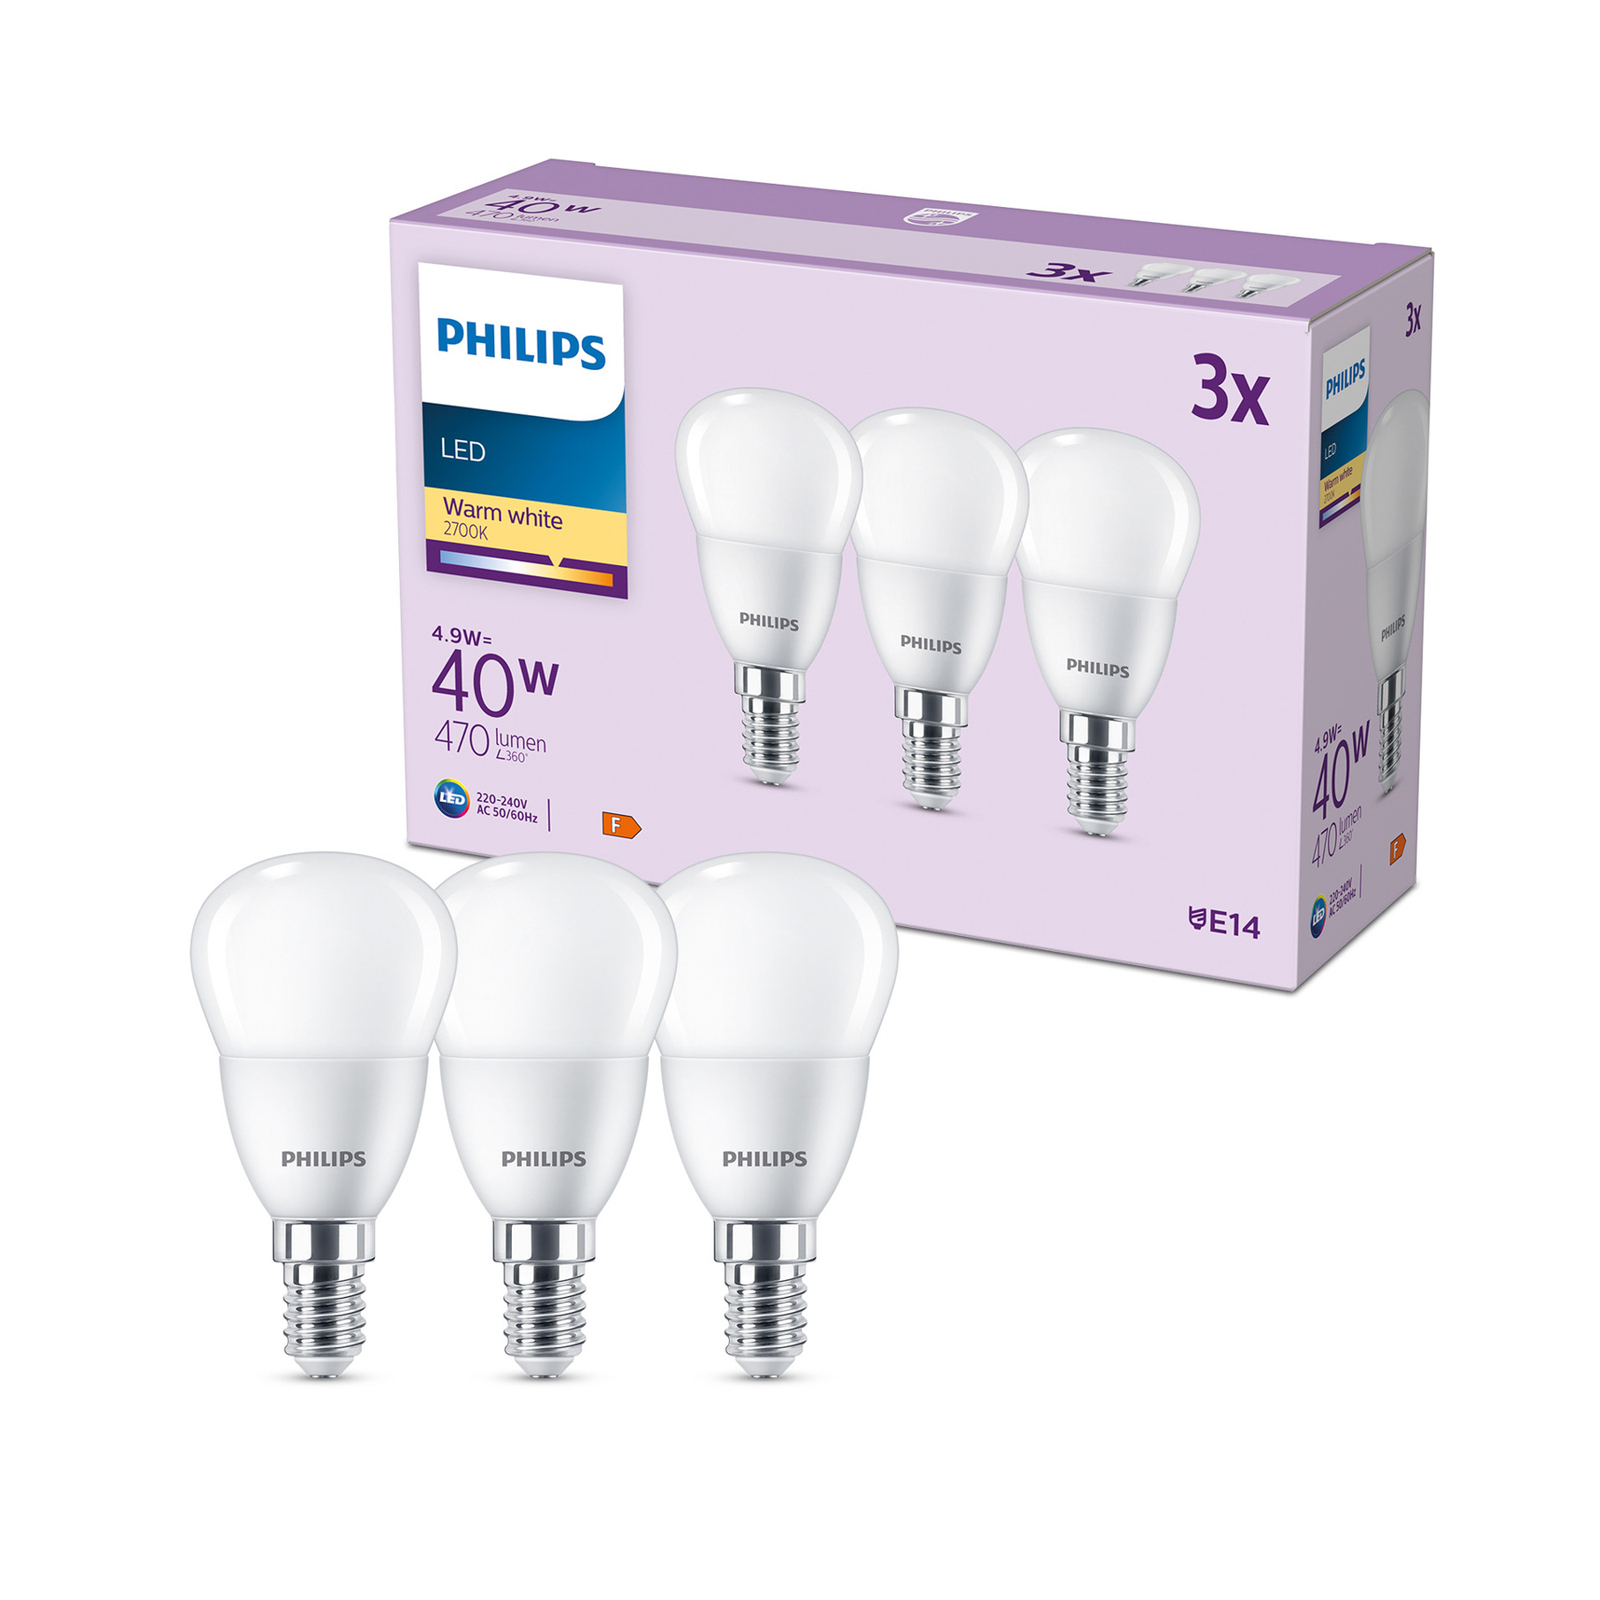 Philips LED lamp E14 4,9W 470m 2.700K per 3 | Lampen24.nl